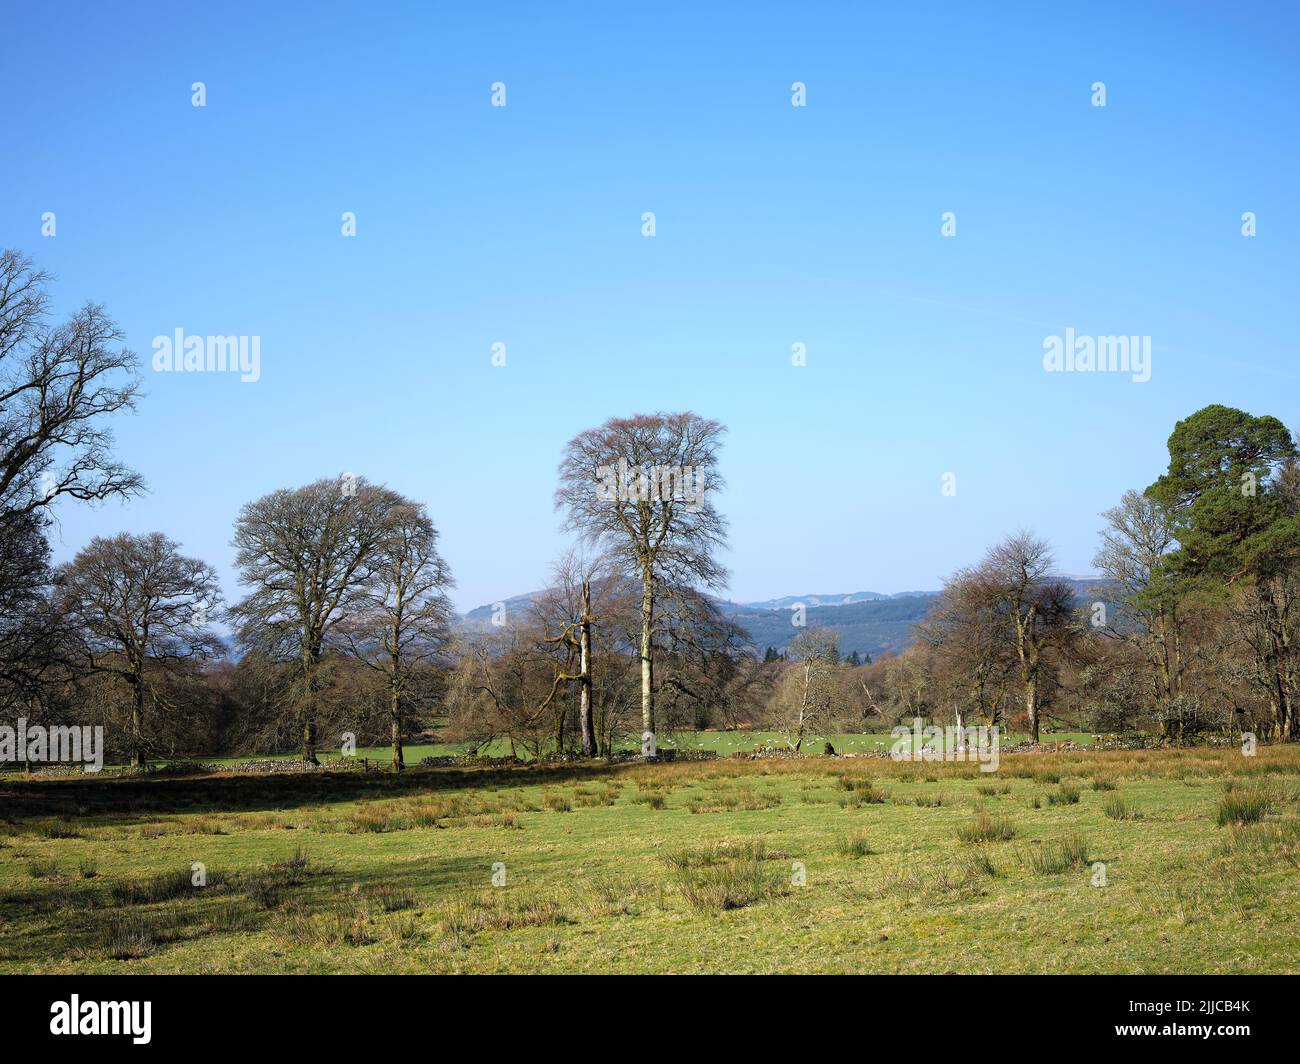 Con un gregge di pecore che pascola in lontananza, un gruppo di alberi accoglie il sole mattutino sul pascolo striato di corsa sulla costa occidentale della Scozia. Argyll Foto Stock